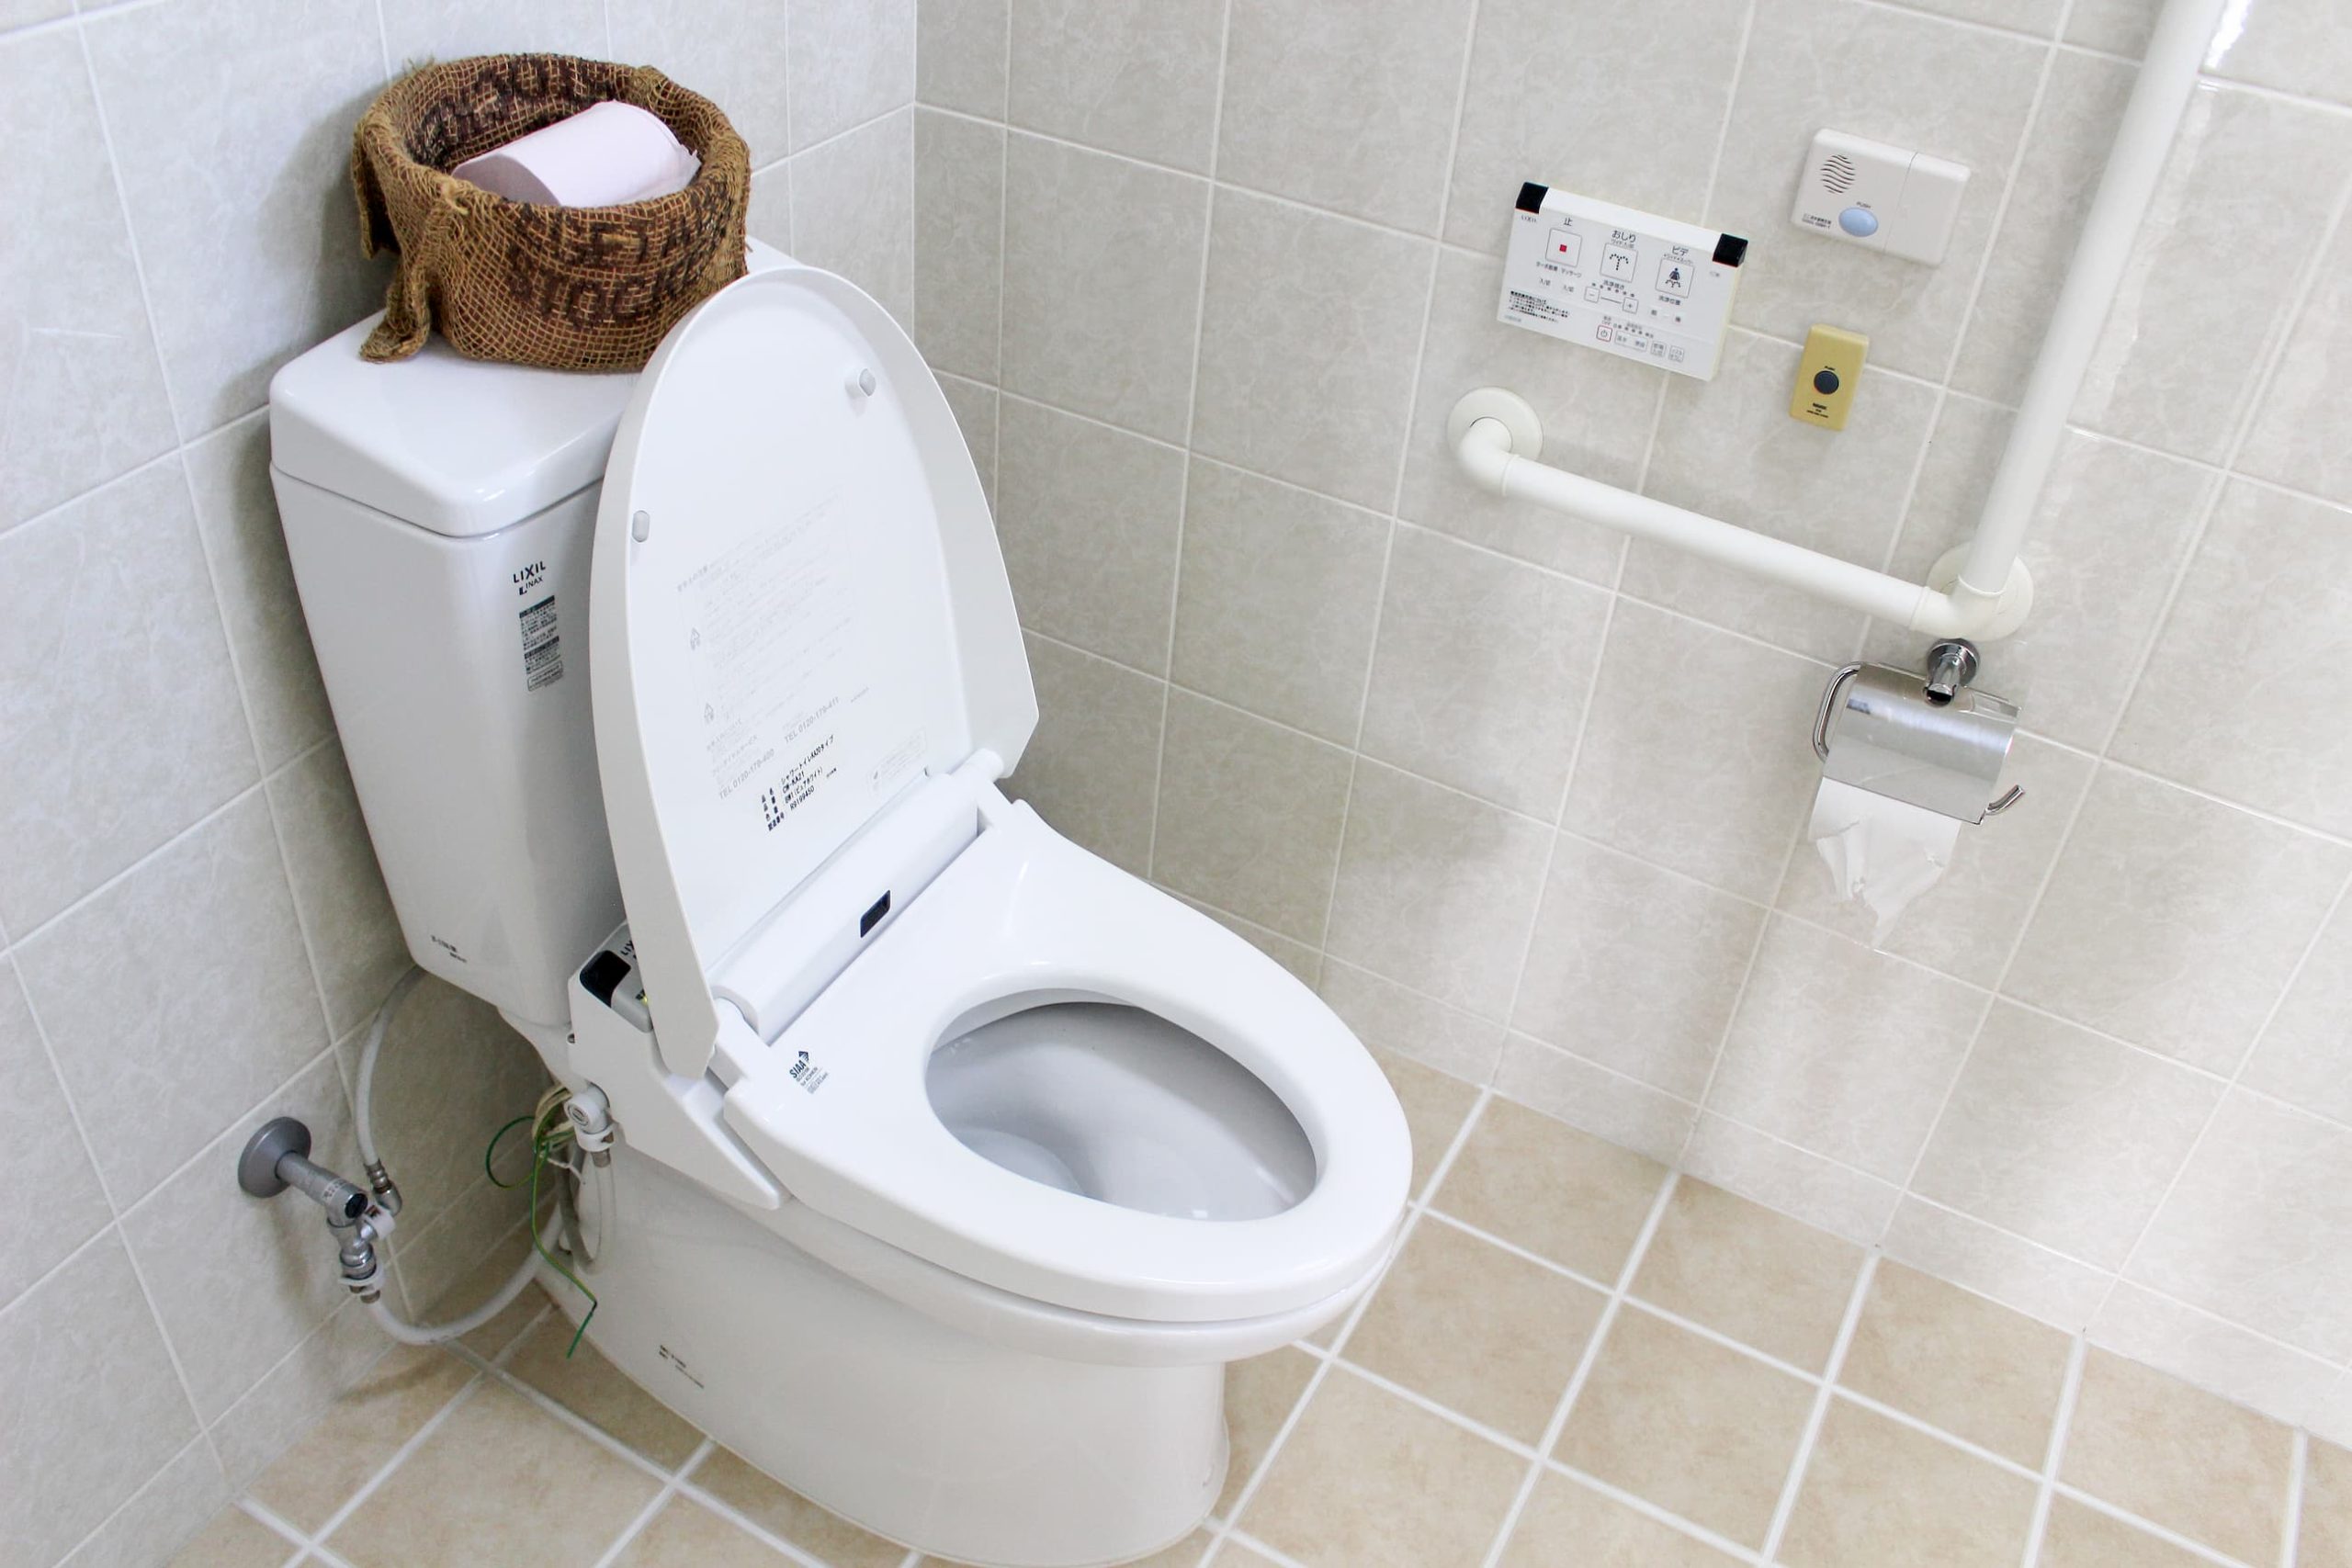 男性トイレ。車椅子利用者を考慮し空間に余裕を持たせています。手摺り付き